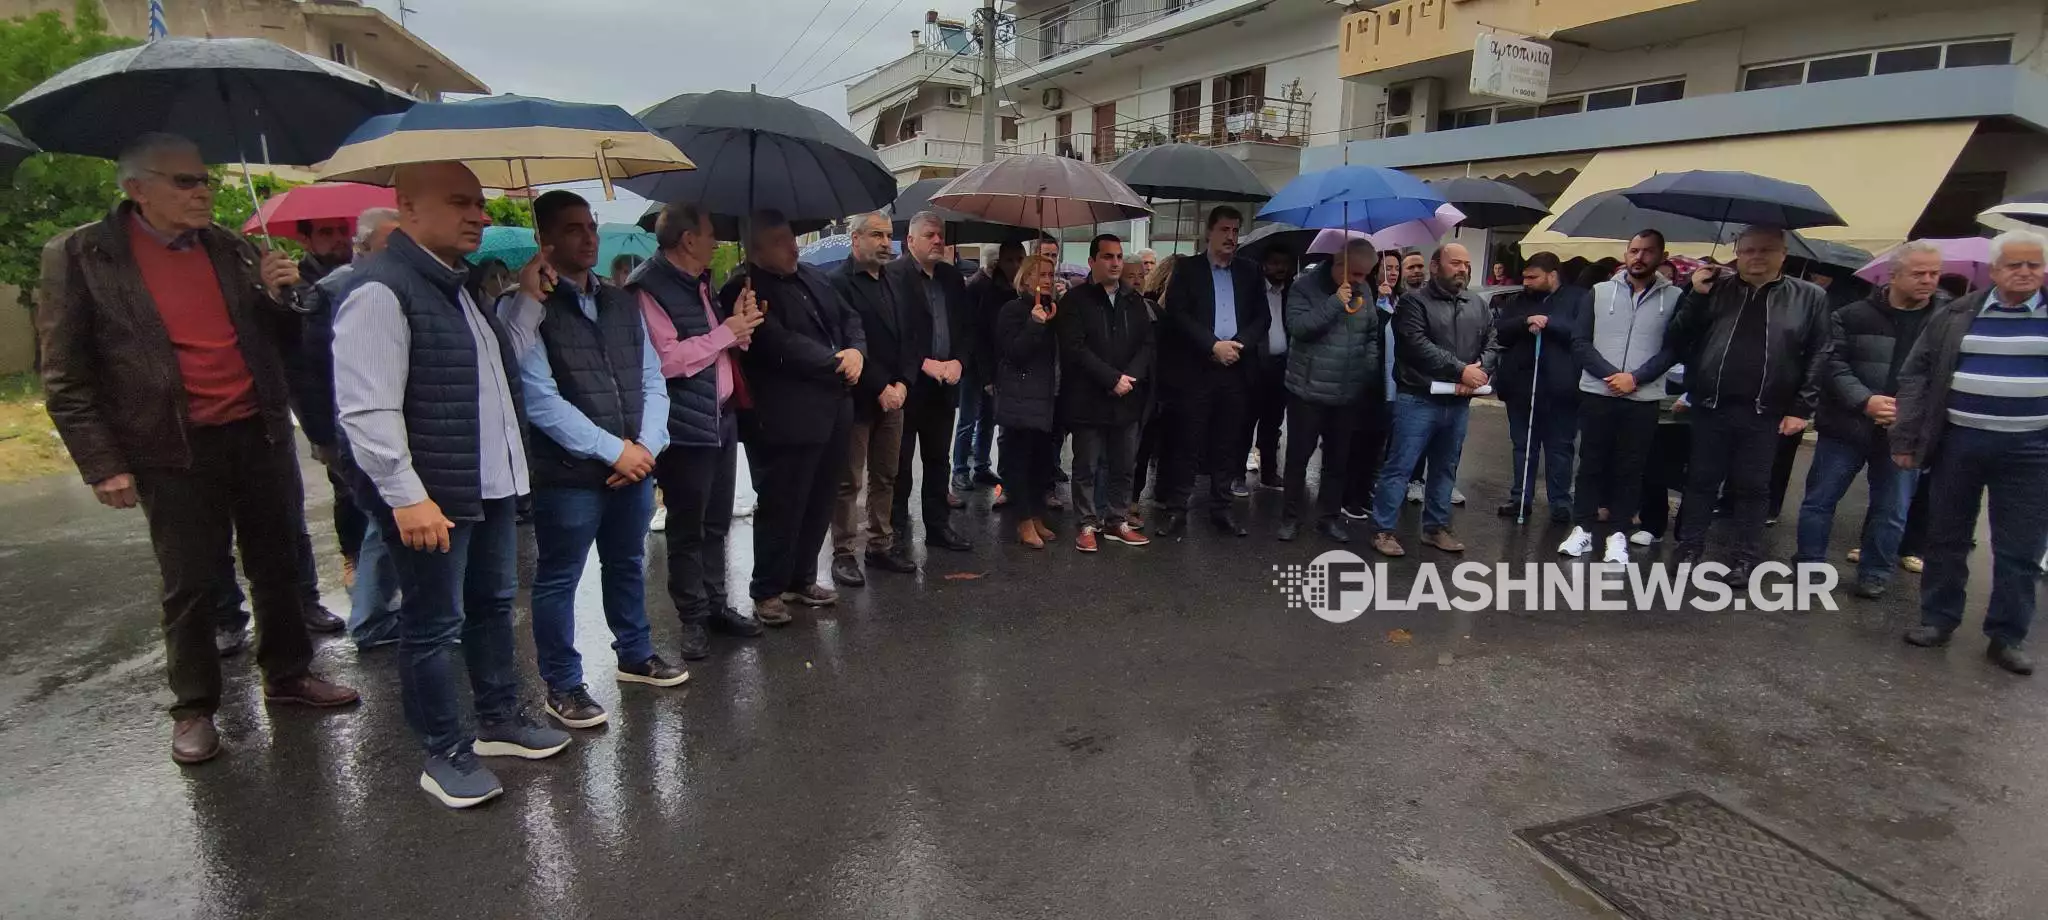 Χανιά: Με βροχή πραγματοποιήθηκαν οι συγκεντρώσεις για την Εργατική Πρωτομαγιά